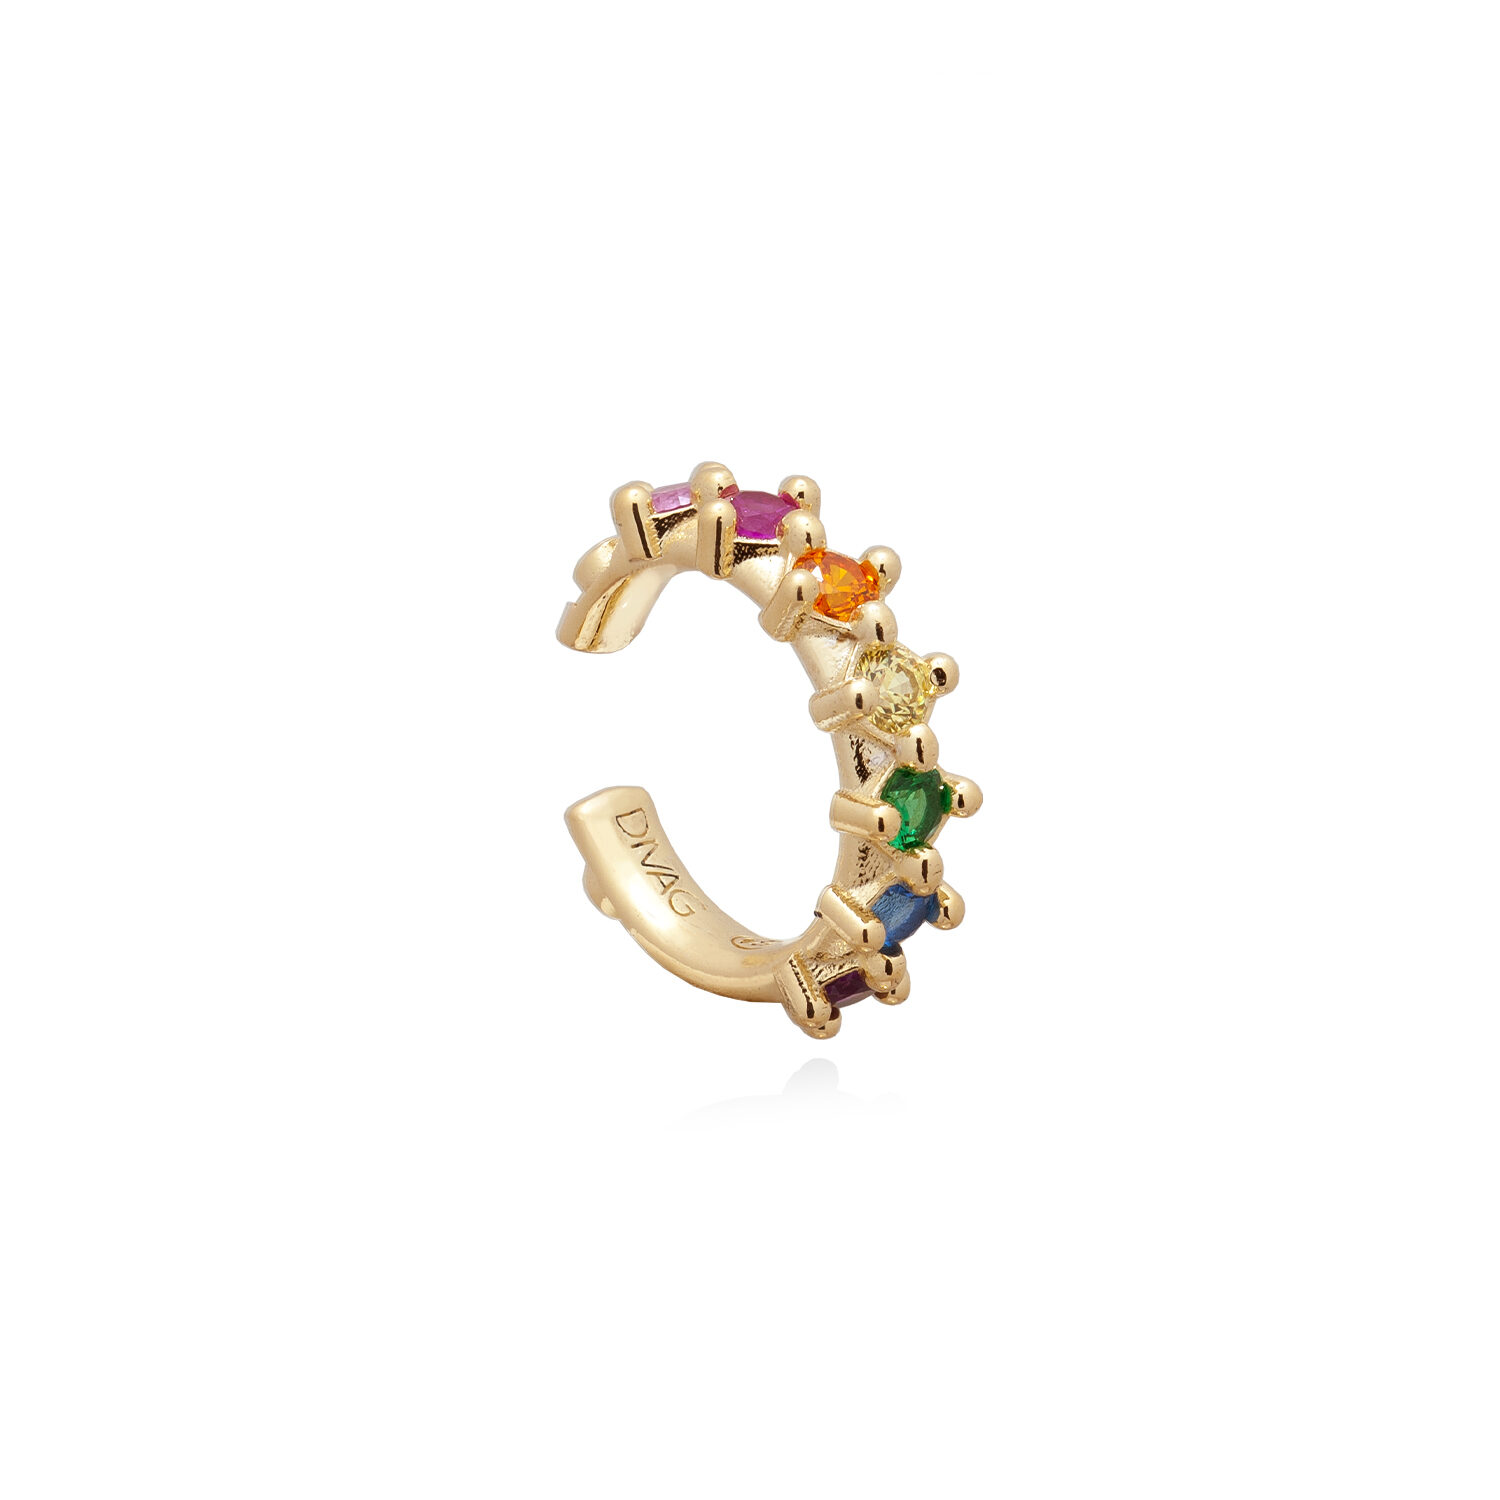 Orecchino a Cerchietto Ear Cuff con Zirconi Rainbow, in Argento 925 Placcato Oro. Gioiello Artigianale, Made in Italy.